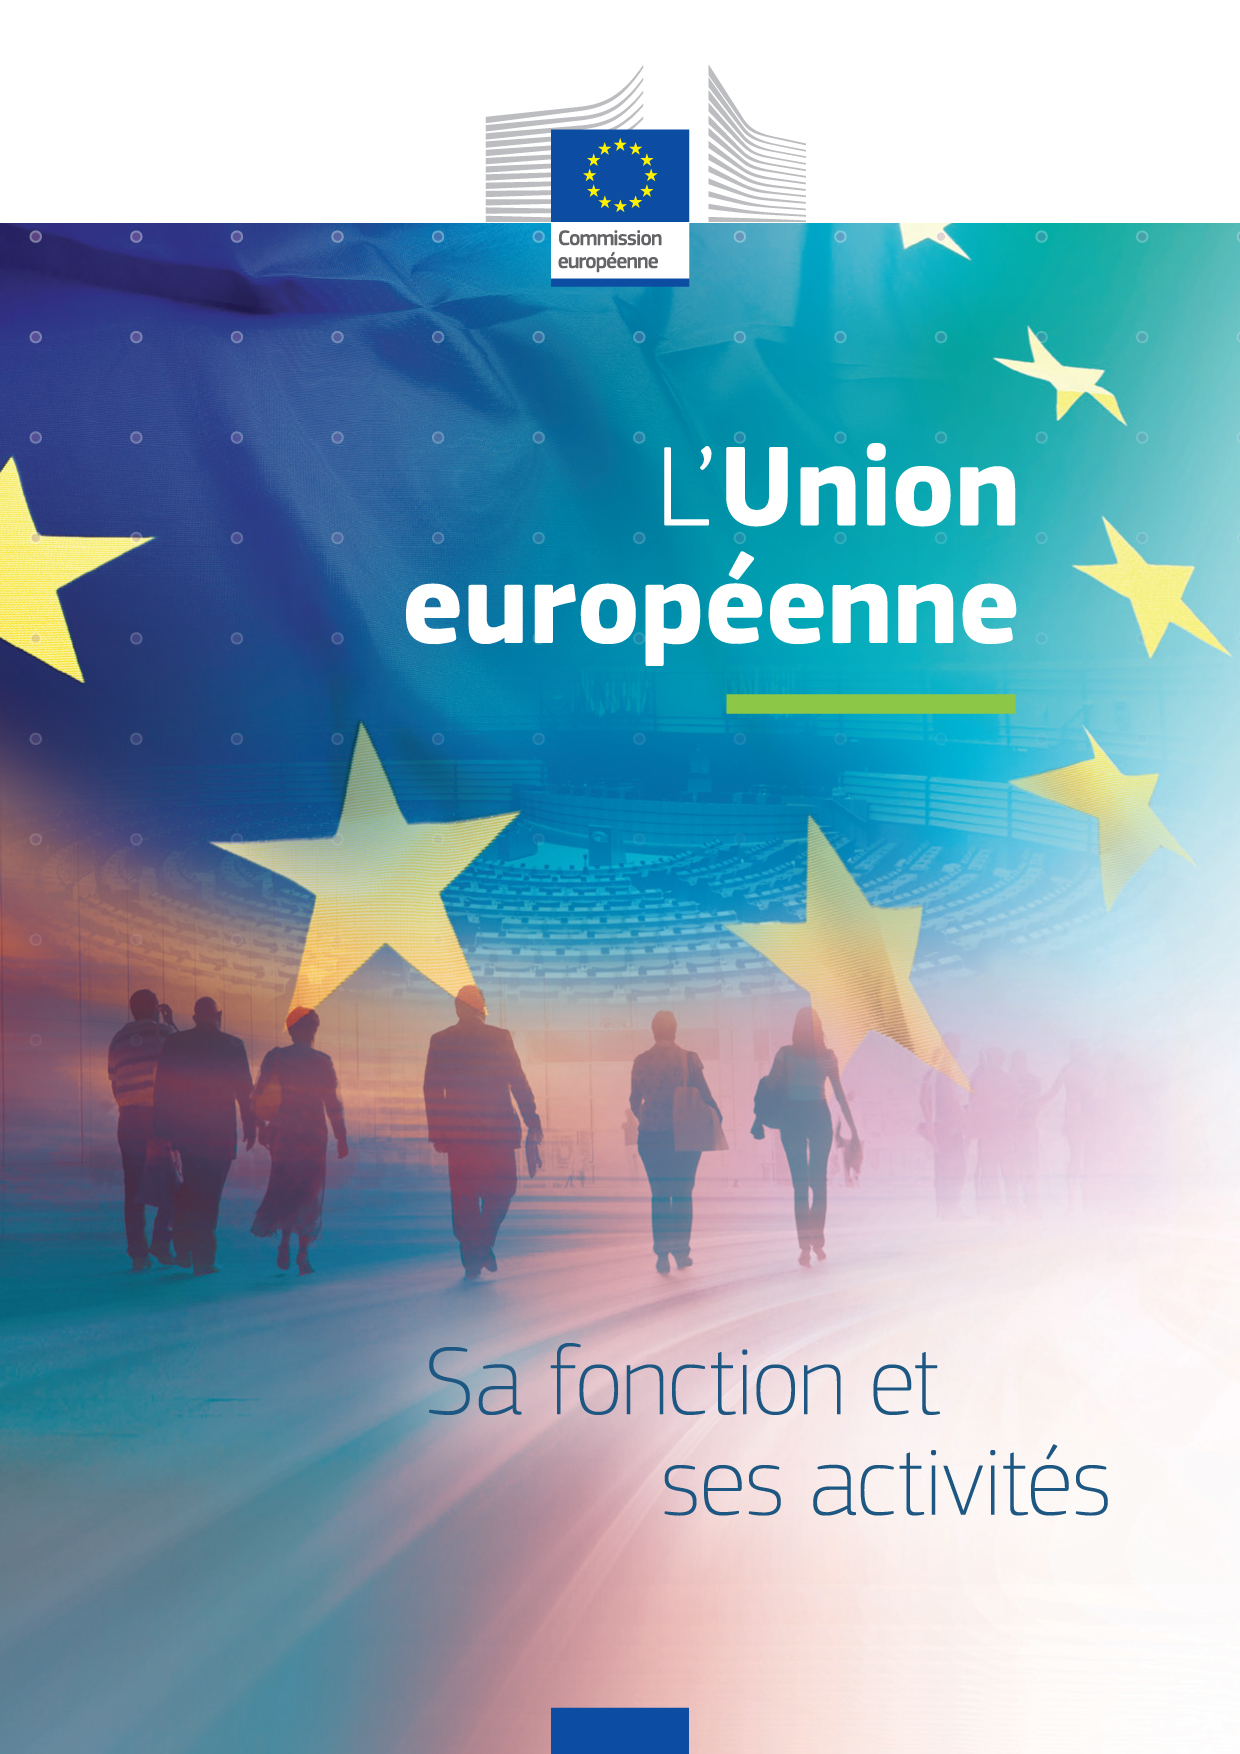 LUnion europeenne sa fonction et ses activités cover